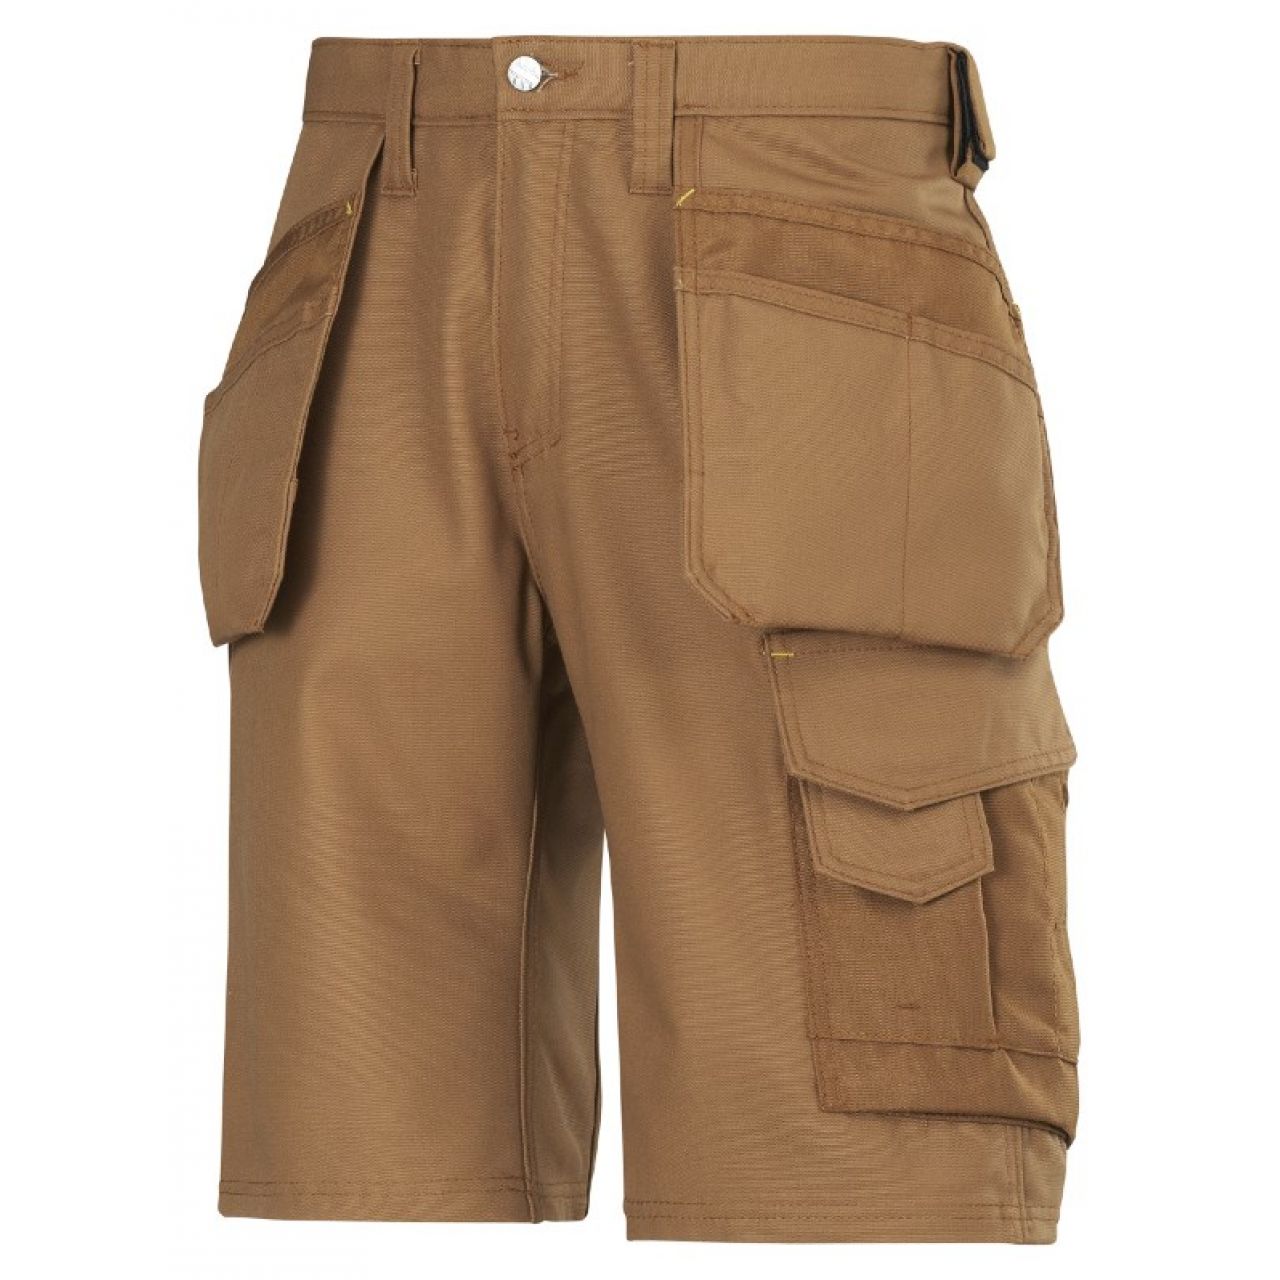 3014 Pantalones cortos de trabajo con bolsillos flotantes Canvas+ marron talla 52